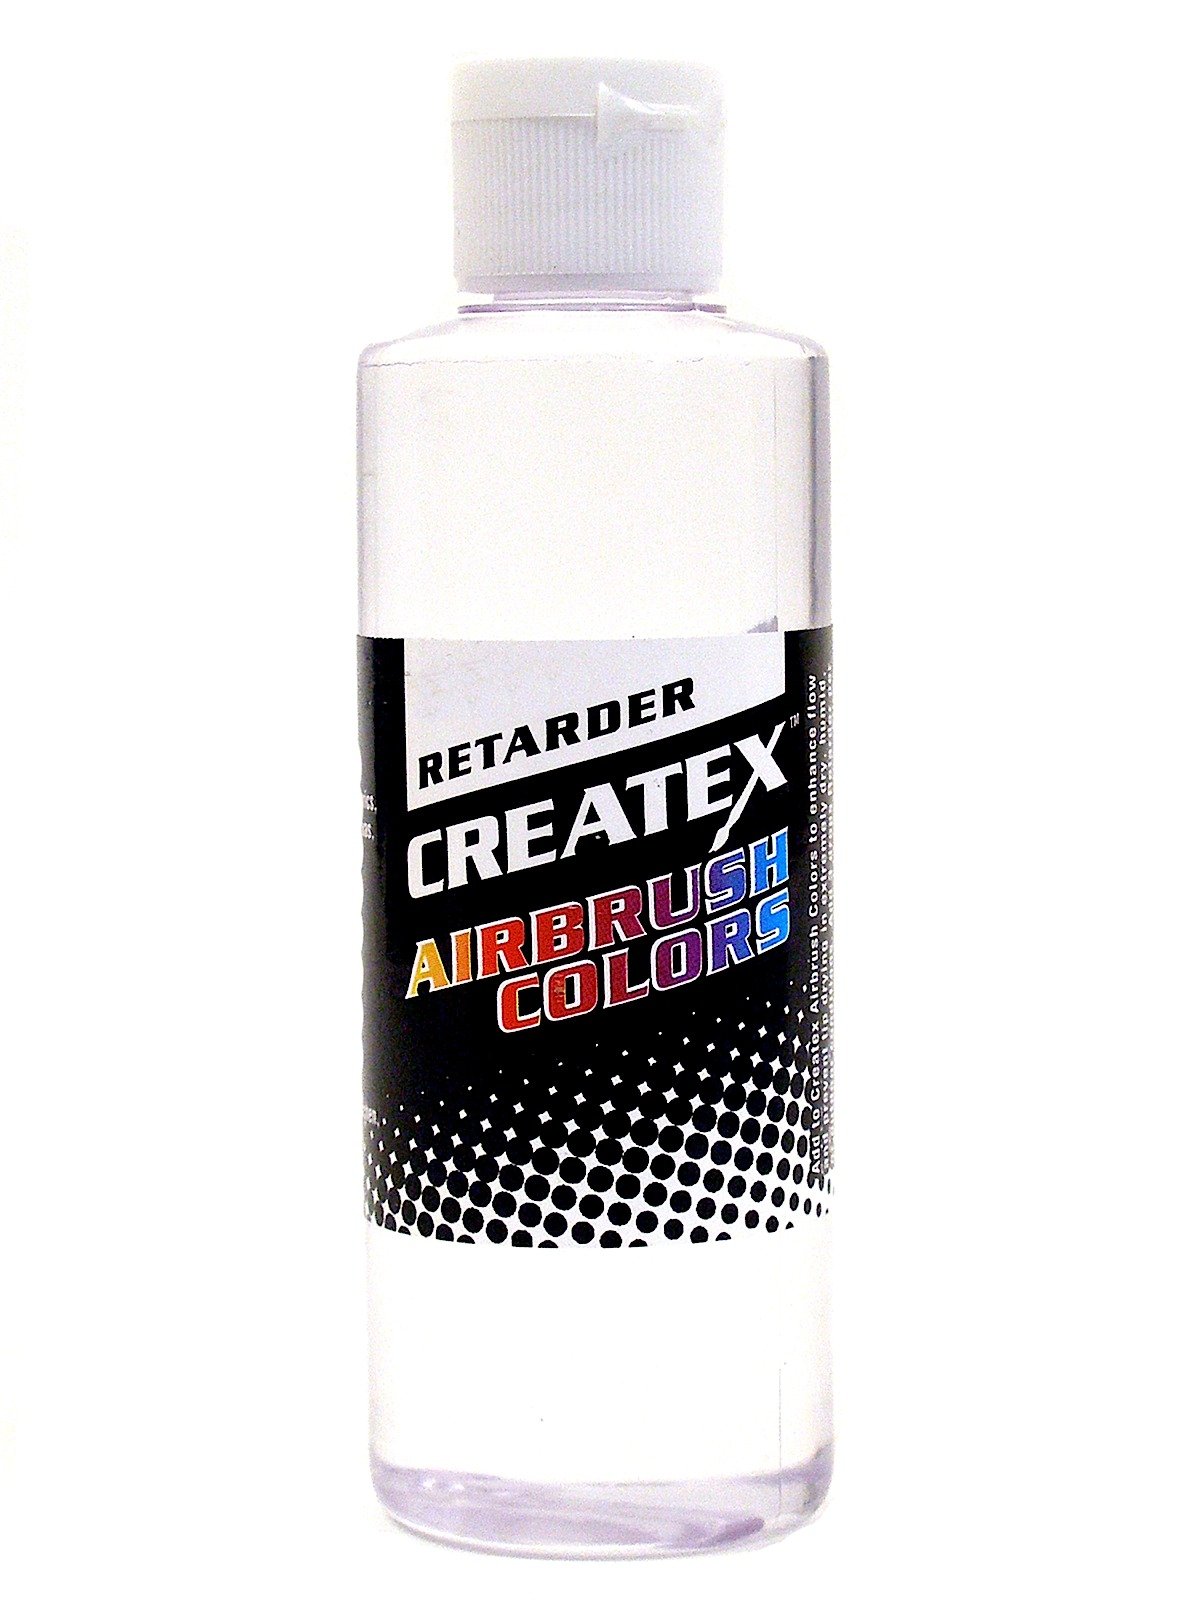 Createx - Airbrush Color Retarder